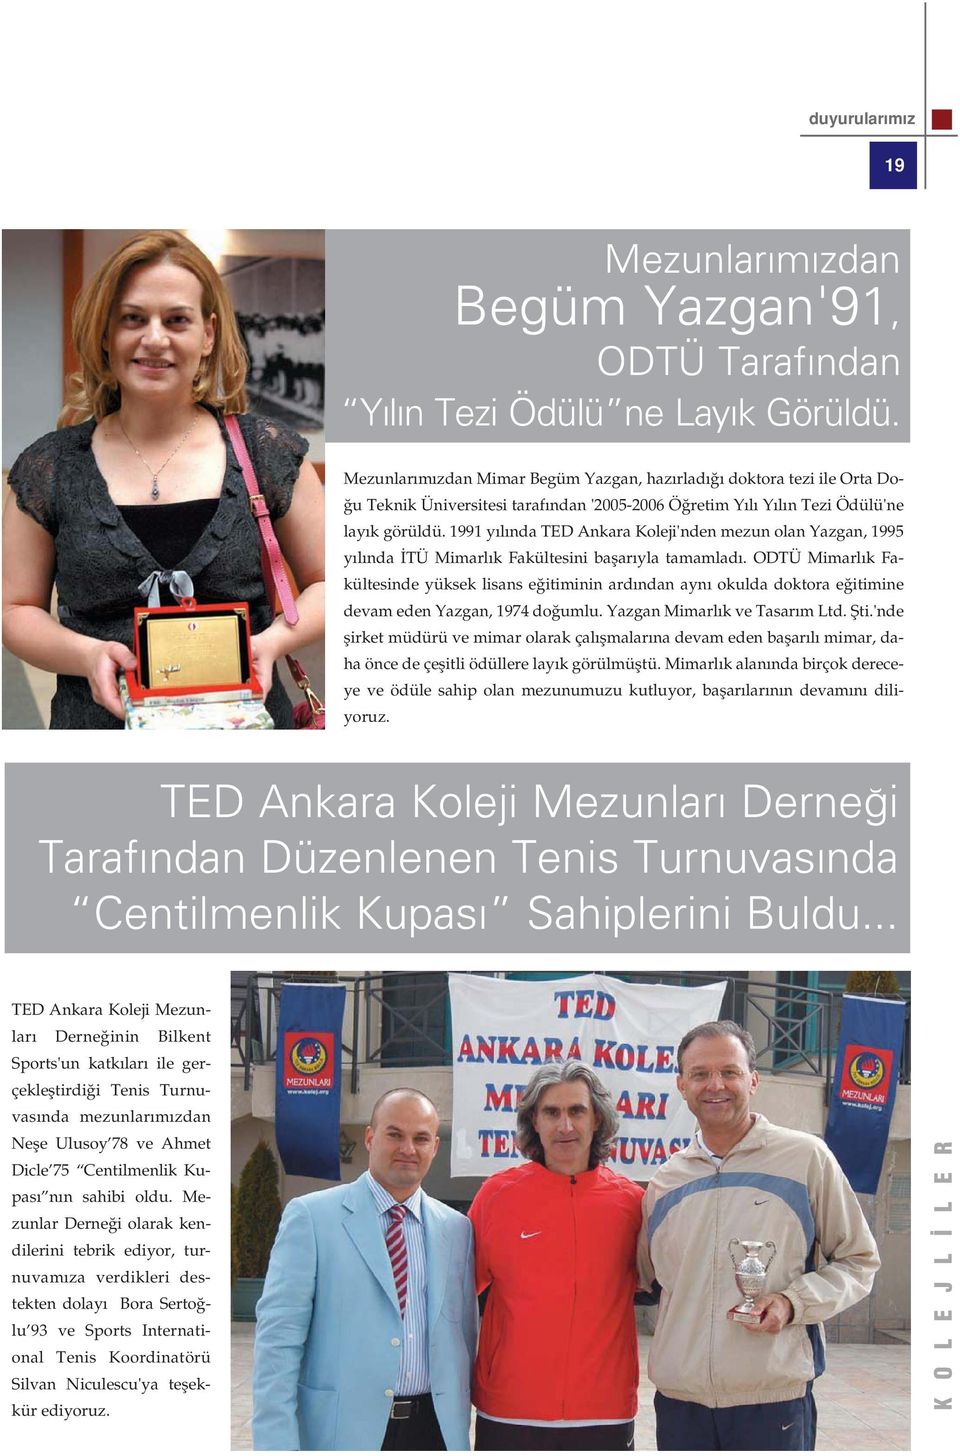 1991 y l nda TED Ankara Koleji'nden mezun olan Yazgan, 1995 y l nda TÜ Mimarl k Fakültesini baflar yla tamamlad.